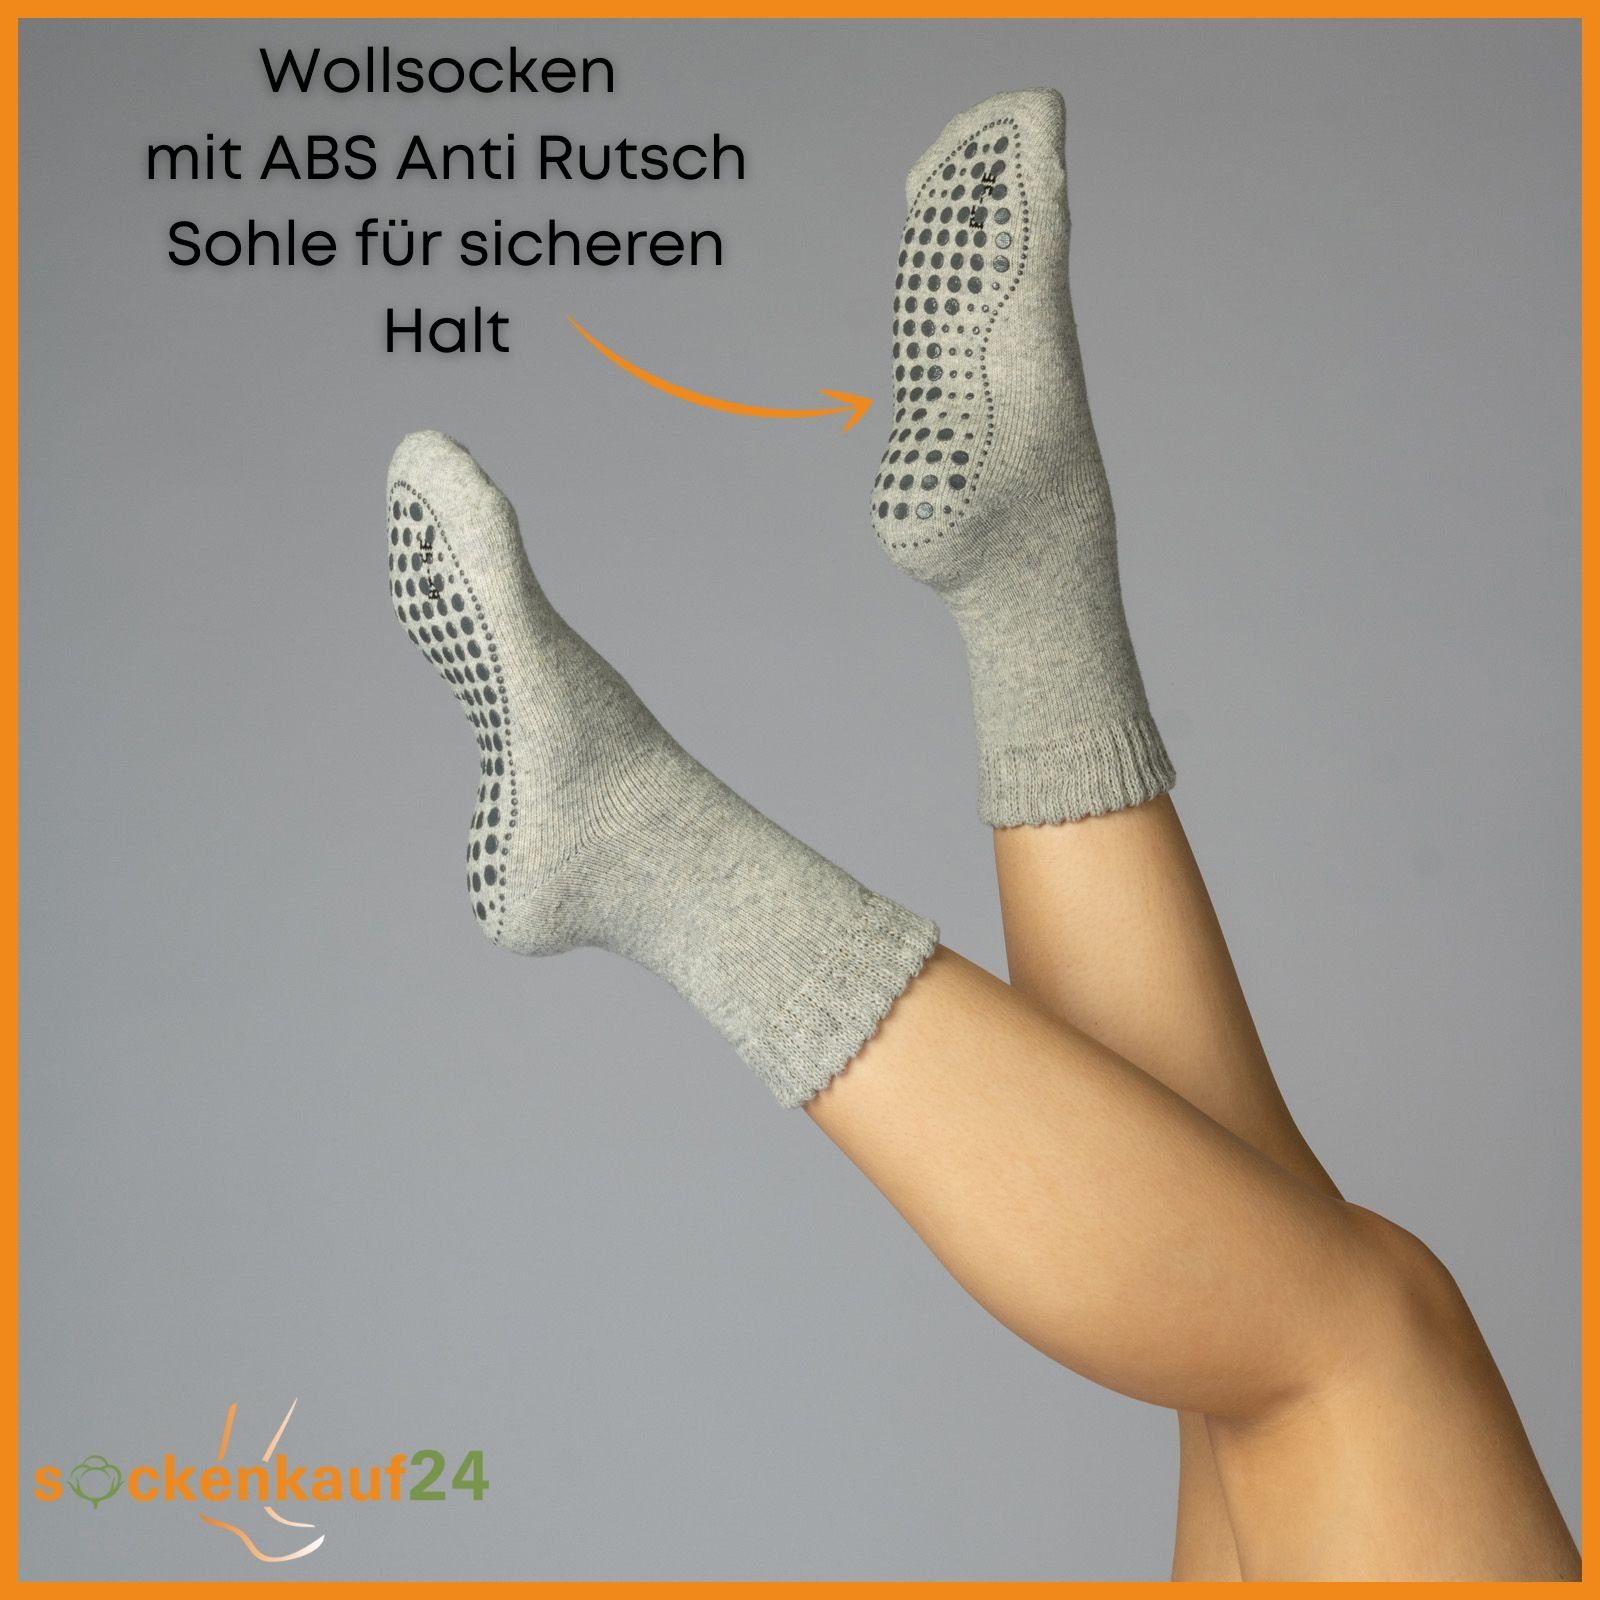 Socken & Paar ABS-Socken mit - oder sockenkauf24 4 Damen ABS 21463 2, Socken 6 Herren WP Anti 2-Paar, Rutsch 39-42) Wolle (Grau/Anthrazit,